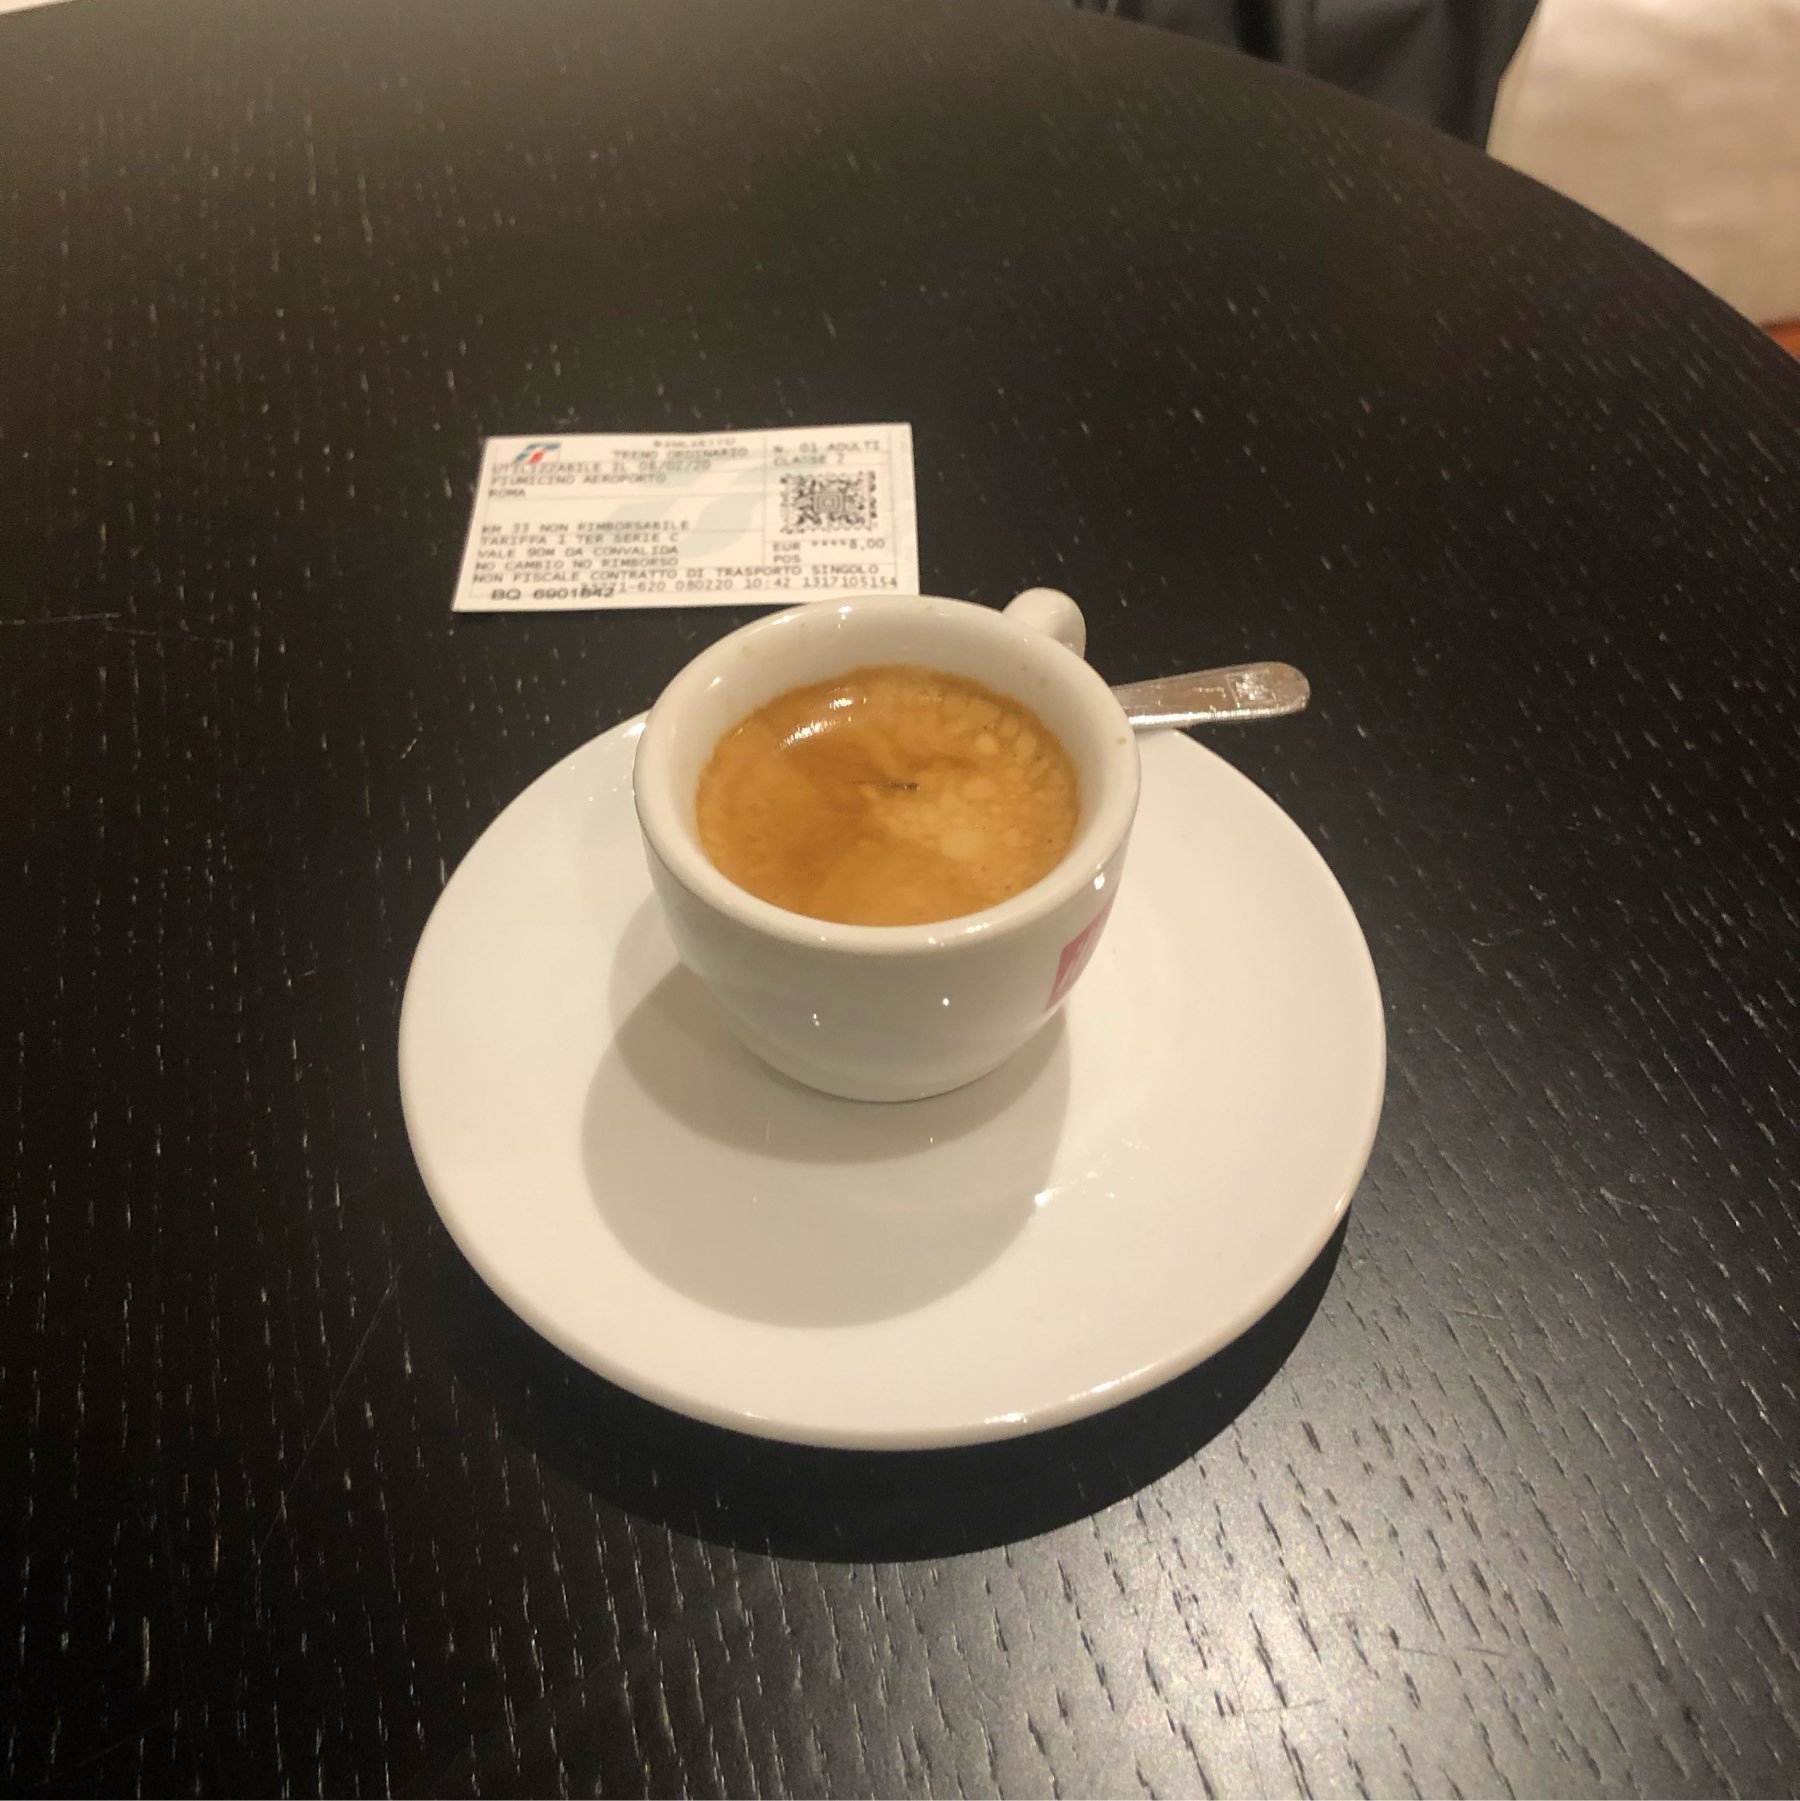 Tiny espresso